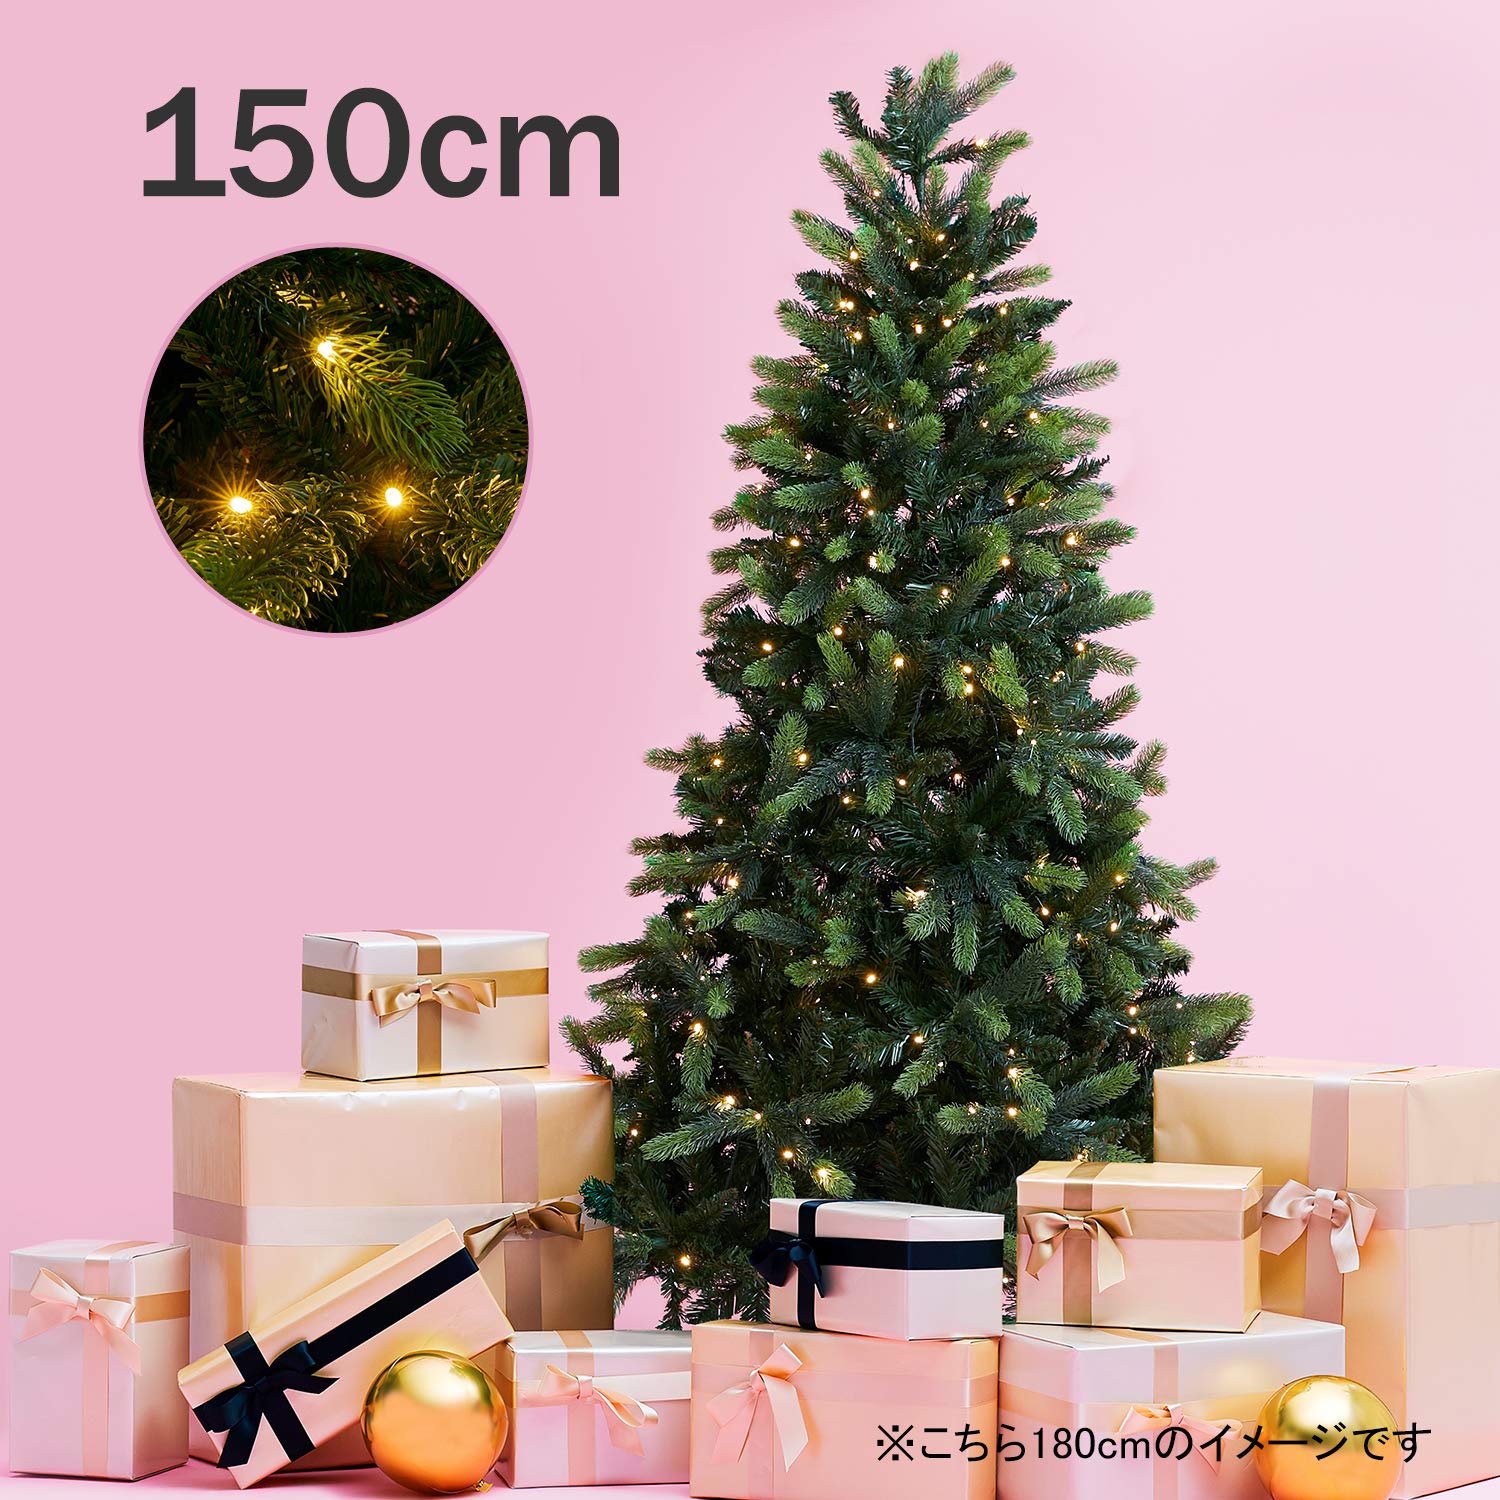 おしゃれなクリスマスツリー2019 大型の北欧風ツリーも